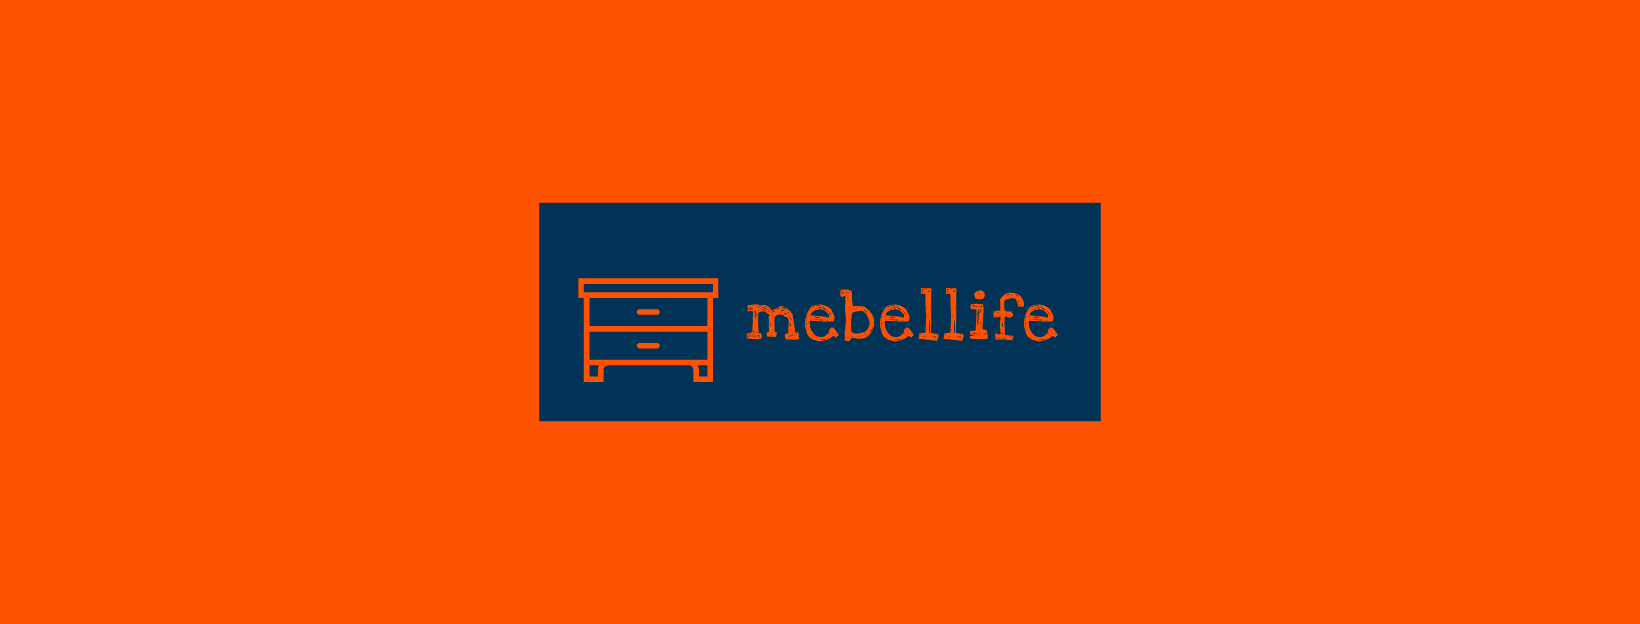 логотип-mebellife-facebook3